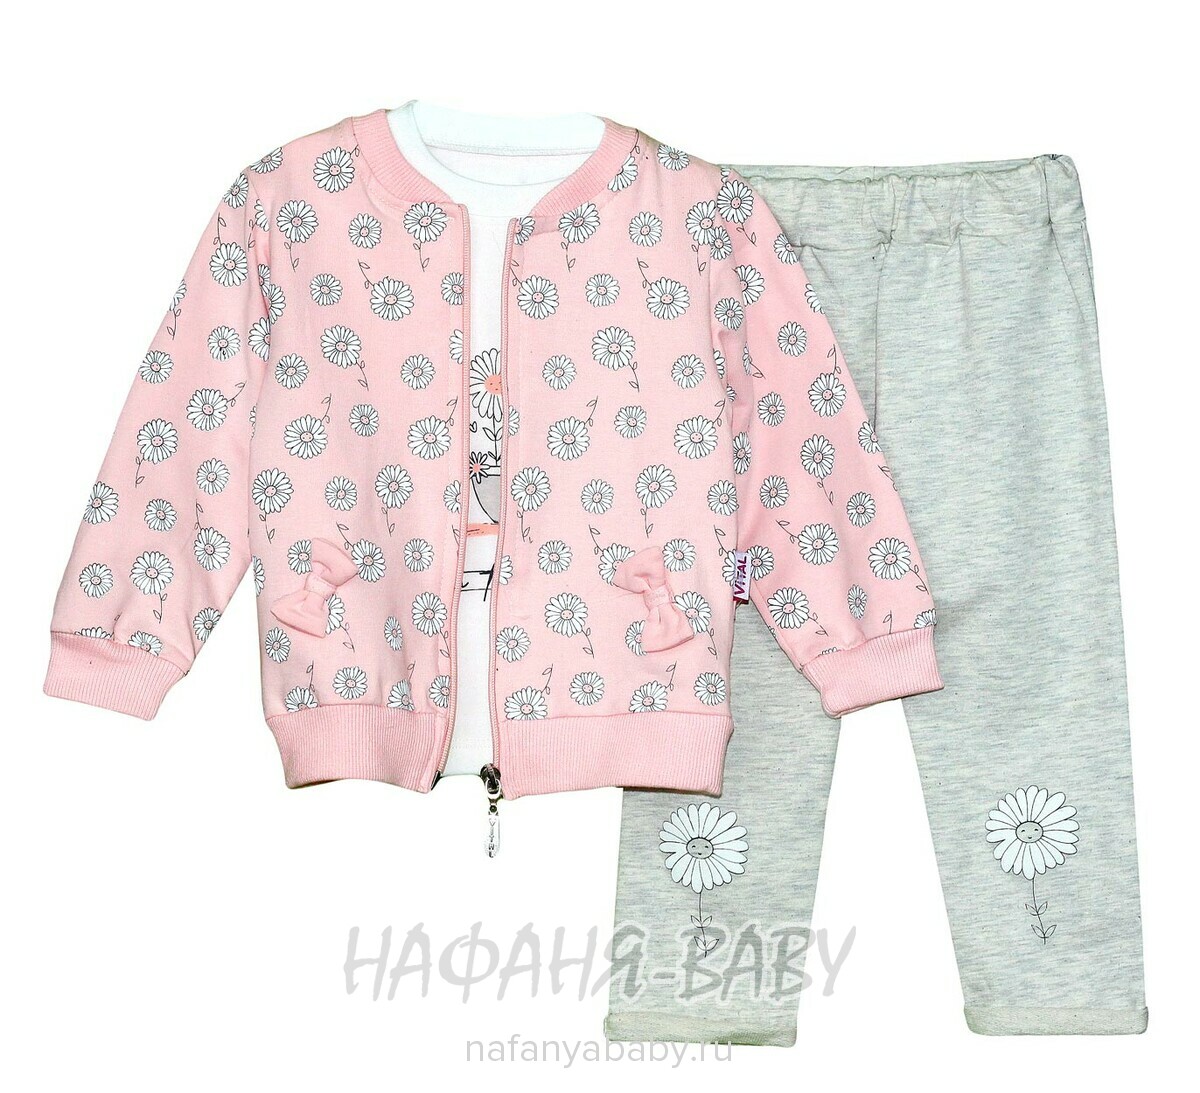 Детский костюм (кофта+лонгслив+брюки) VITAL арт: 3004, 0-12 мес, 1-4 года, цвет молочный с розовым, оптом Турция